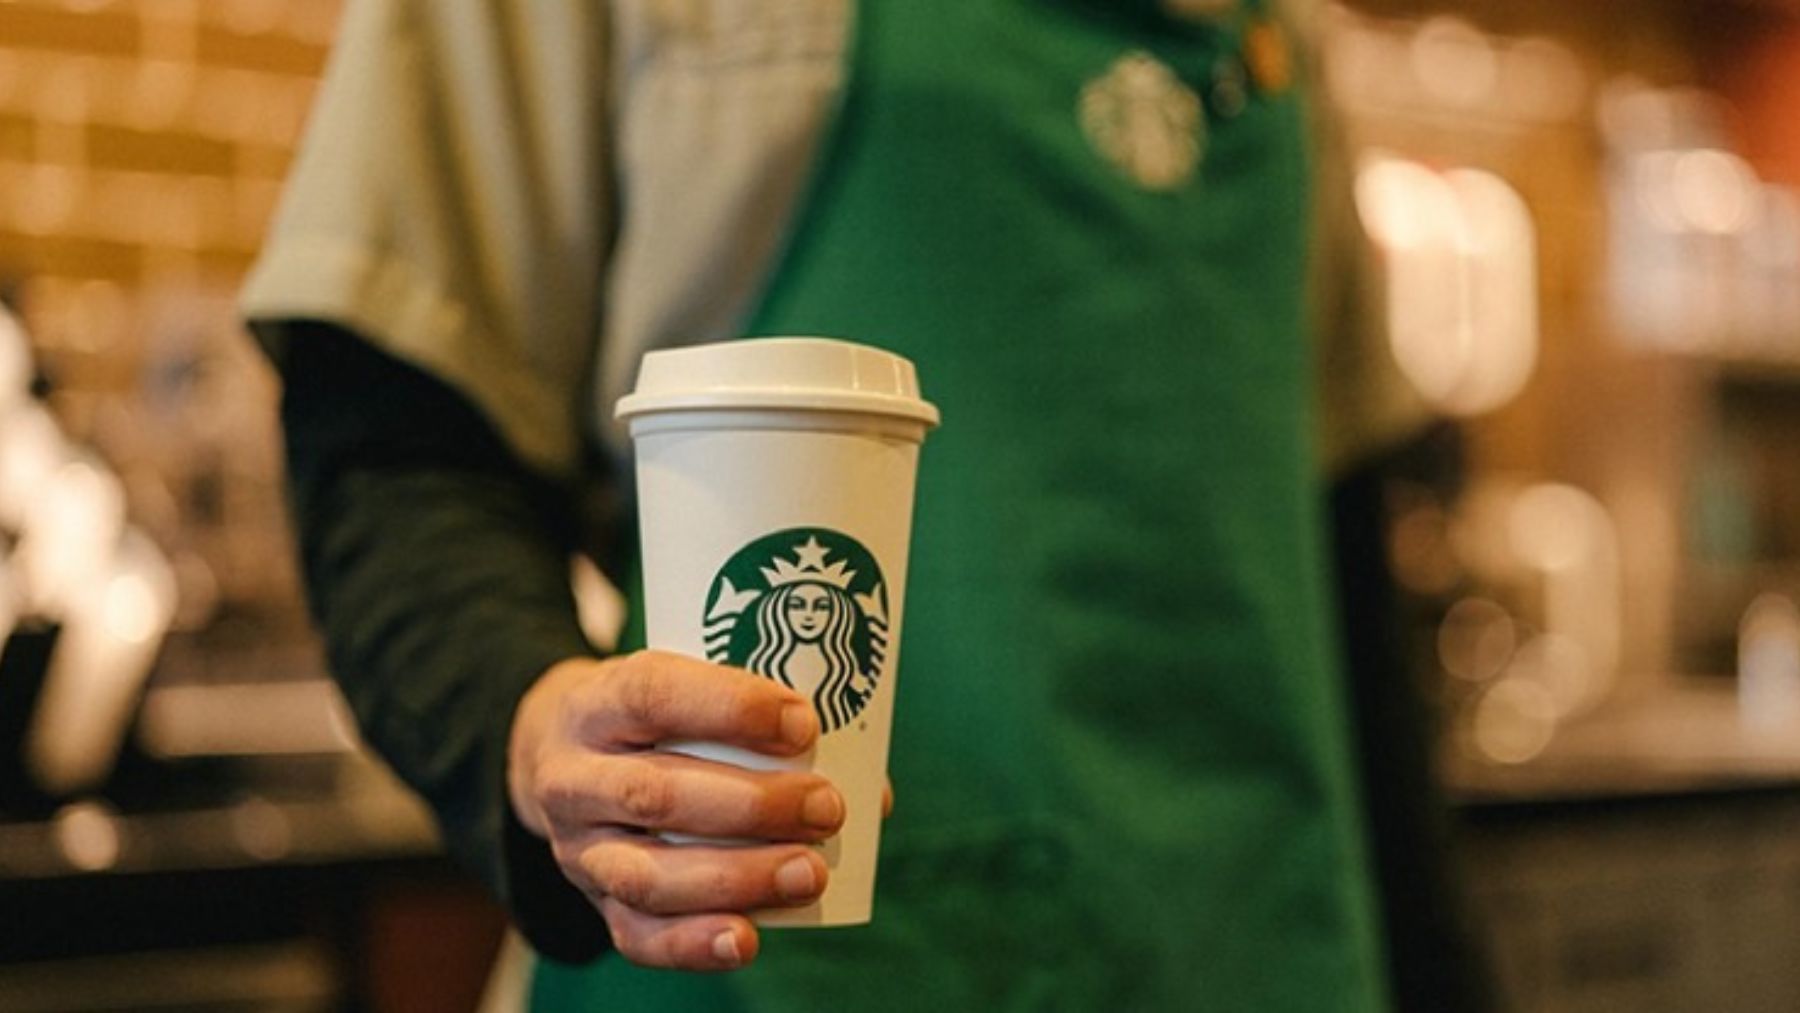 Descubre el significado de los colores en los delantales de Starbucks